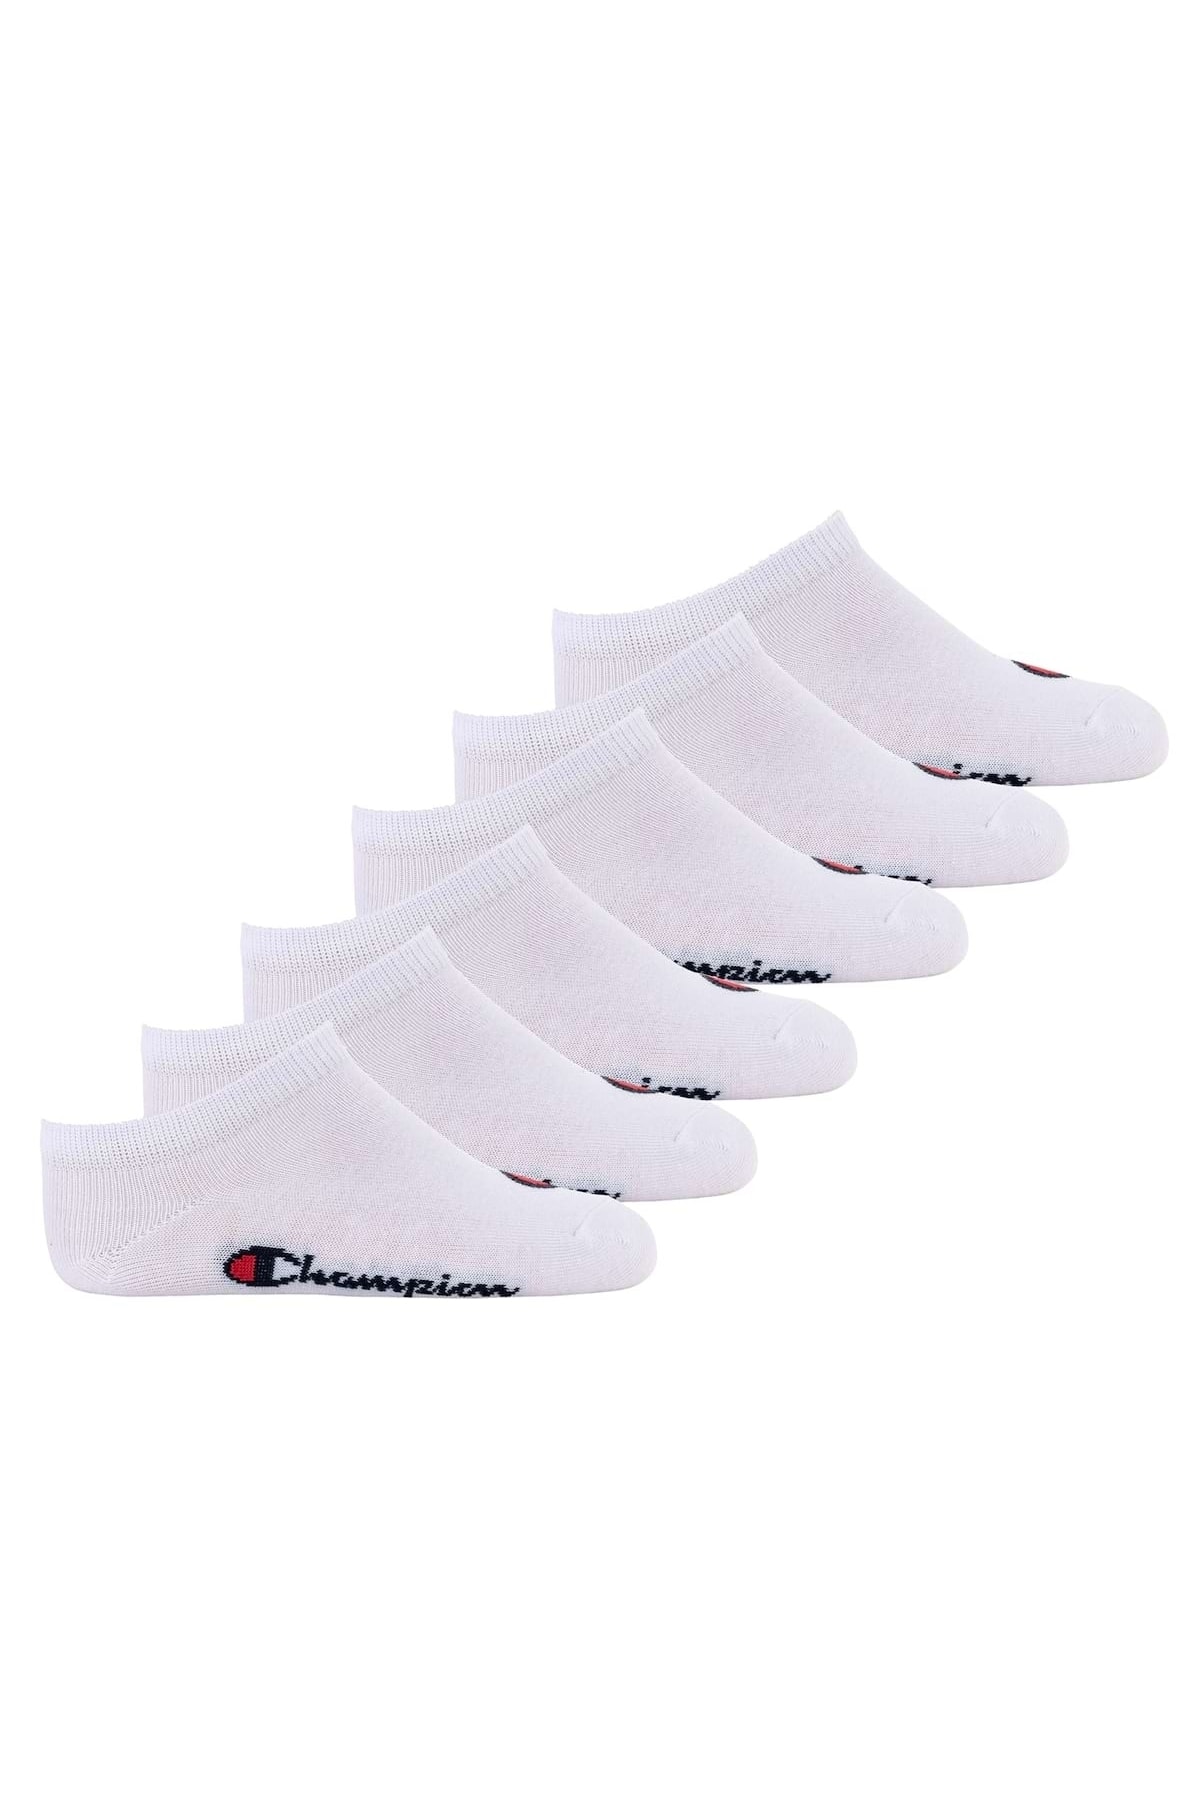 Champion Socken Weiß 6er-Pack